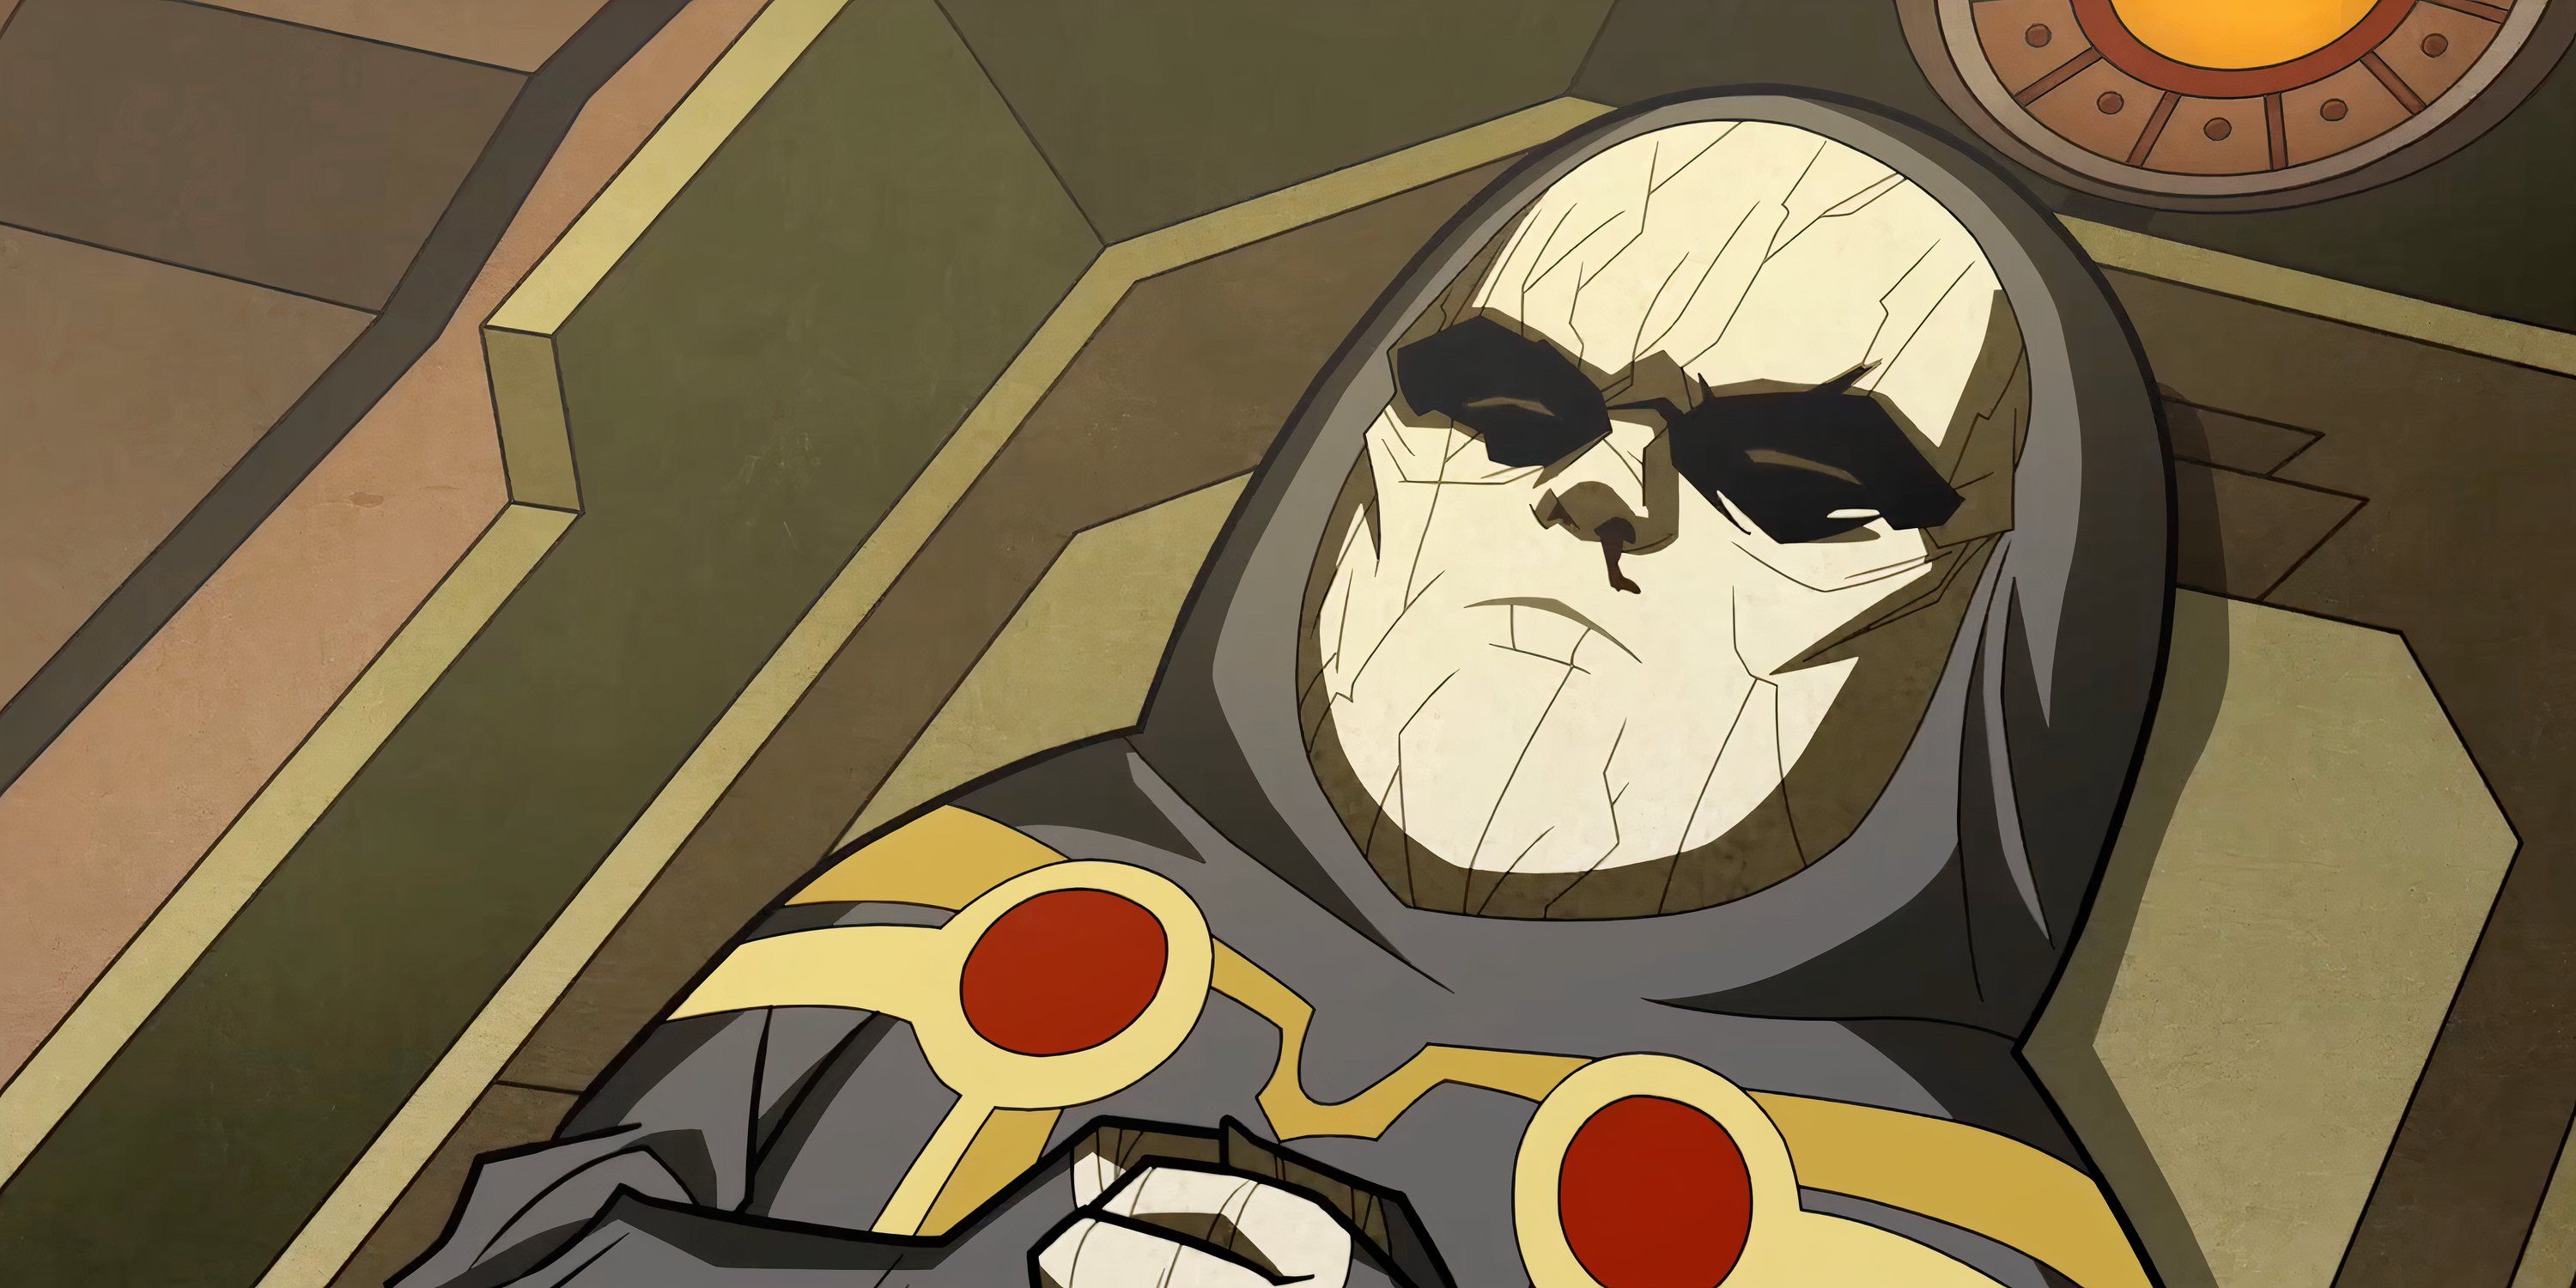 Baby Darkseid muere en su cuna en Crisis en Tierras Infinitas Parte 3